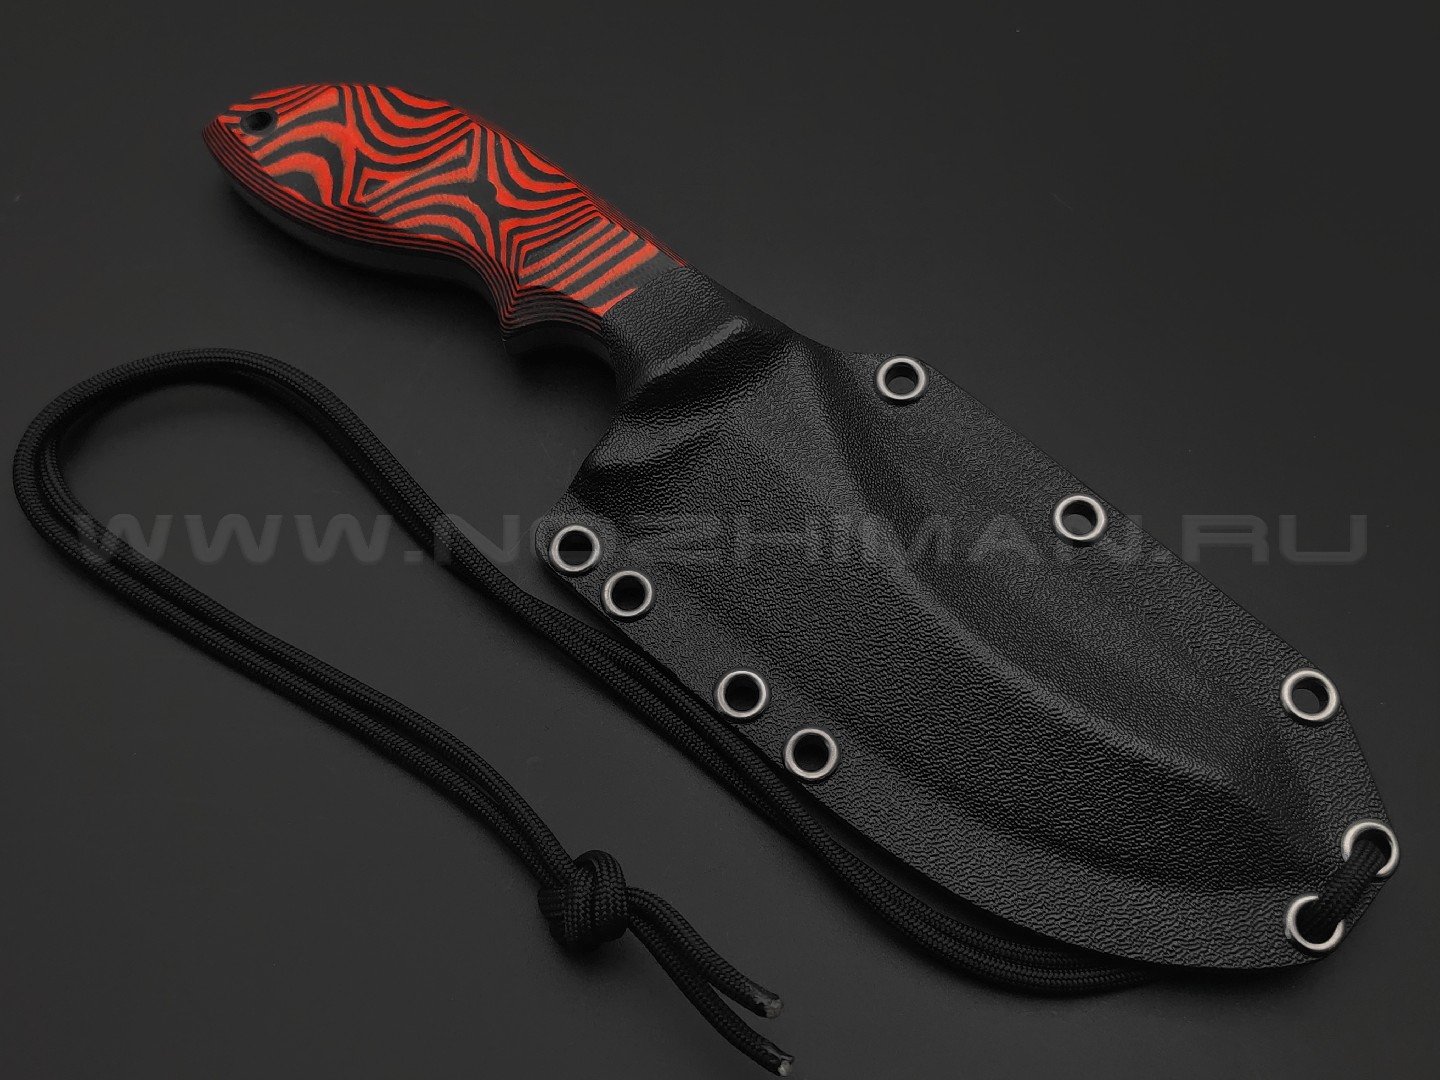 Волчий Век нож Кондрат 12 Custom сталь 95Х18 WA худ.травление Хаотик, рукоять G10 black & red, пины карбон